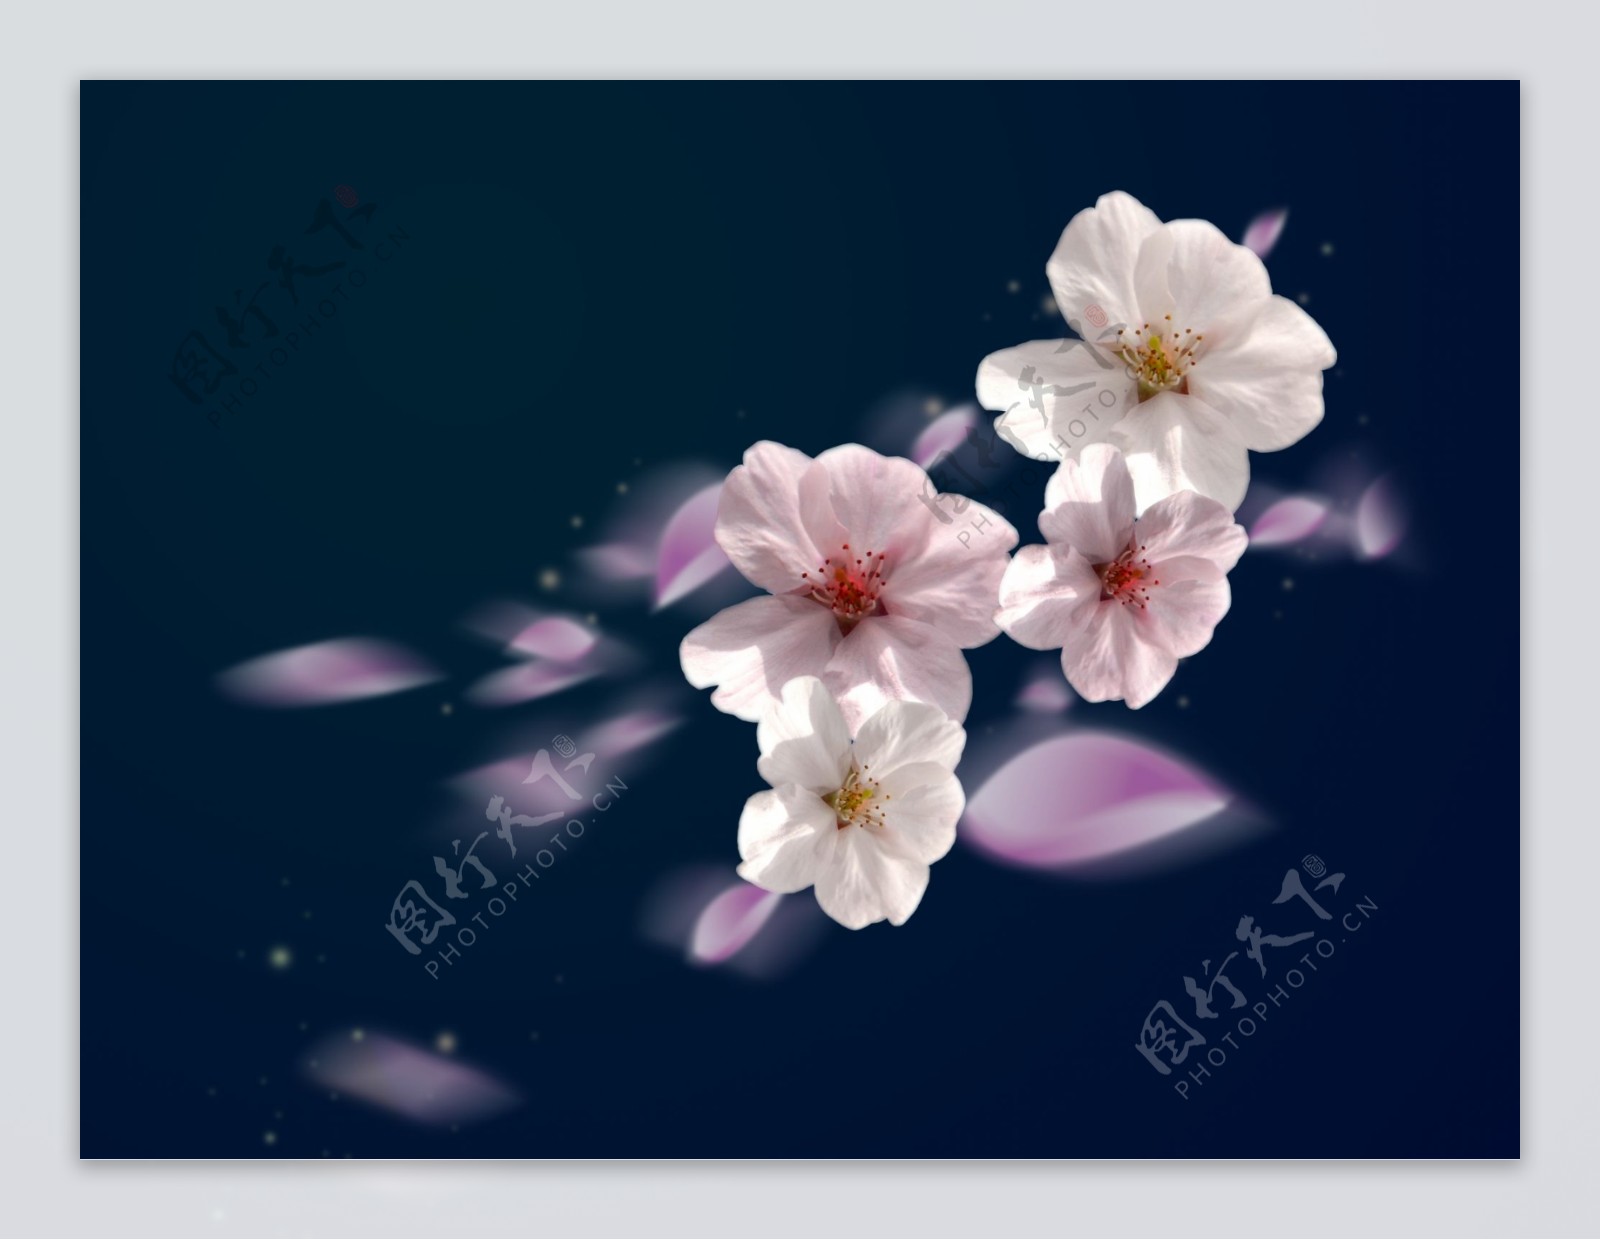 樱花抠图图片